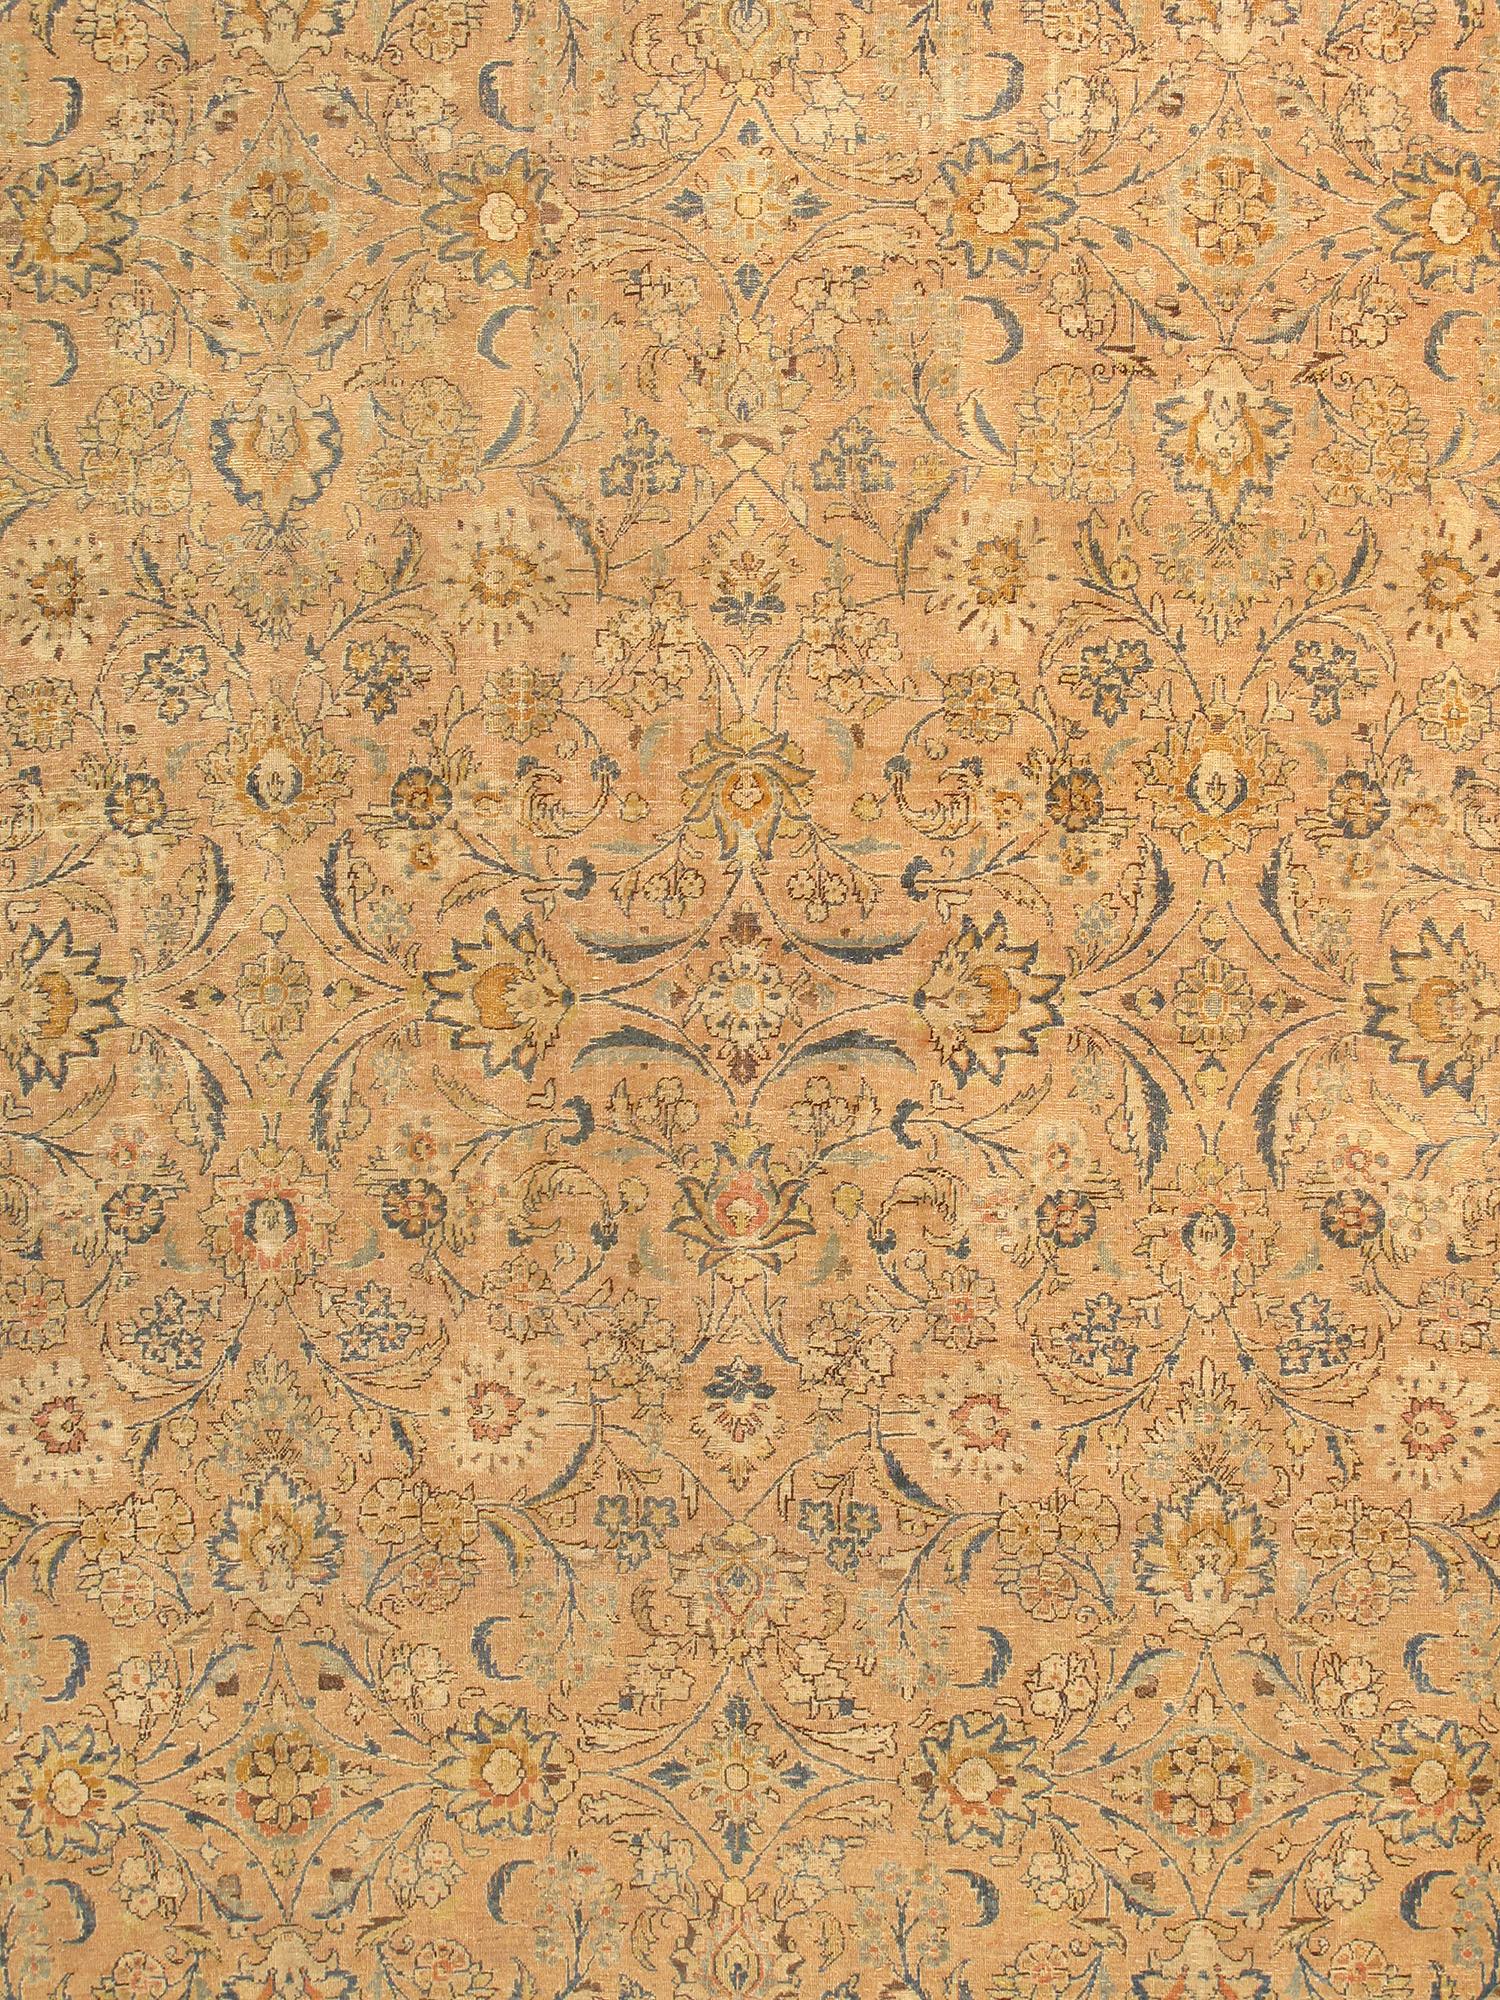 Antike Baku-Design-Teppiche zeichnen sich durch ihre exzellente Knüpfung und ihre bemerkenswerte Beibehaltung der klassischen Traditionen des antiken Teppichdesigns aus. Setzen Sie mit der Baku Floral Collection'S einen prächtigen Akzent in Ihrem